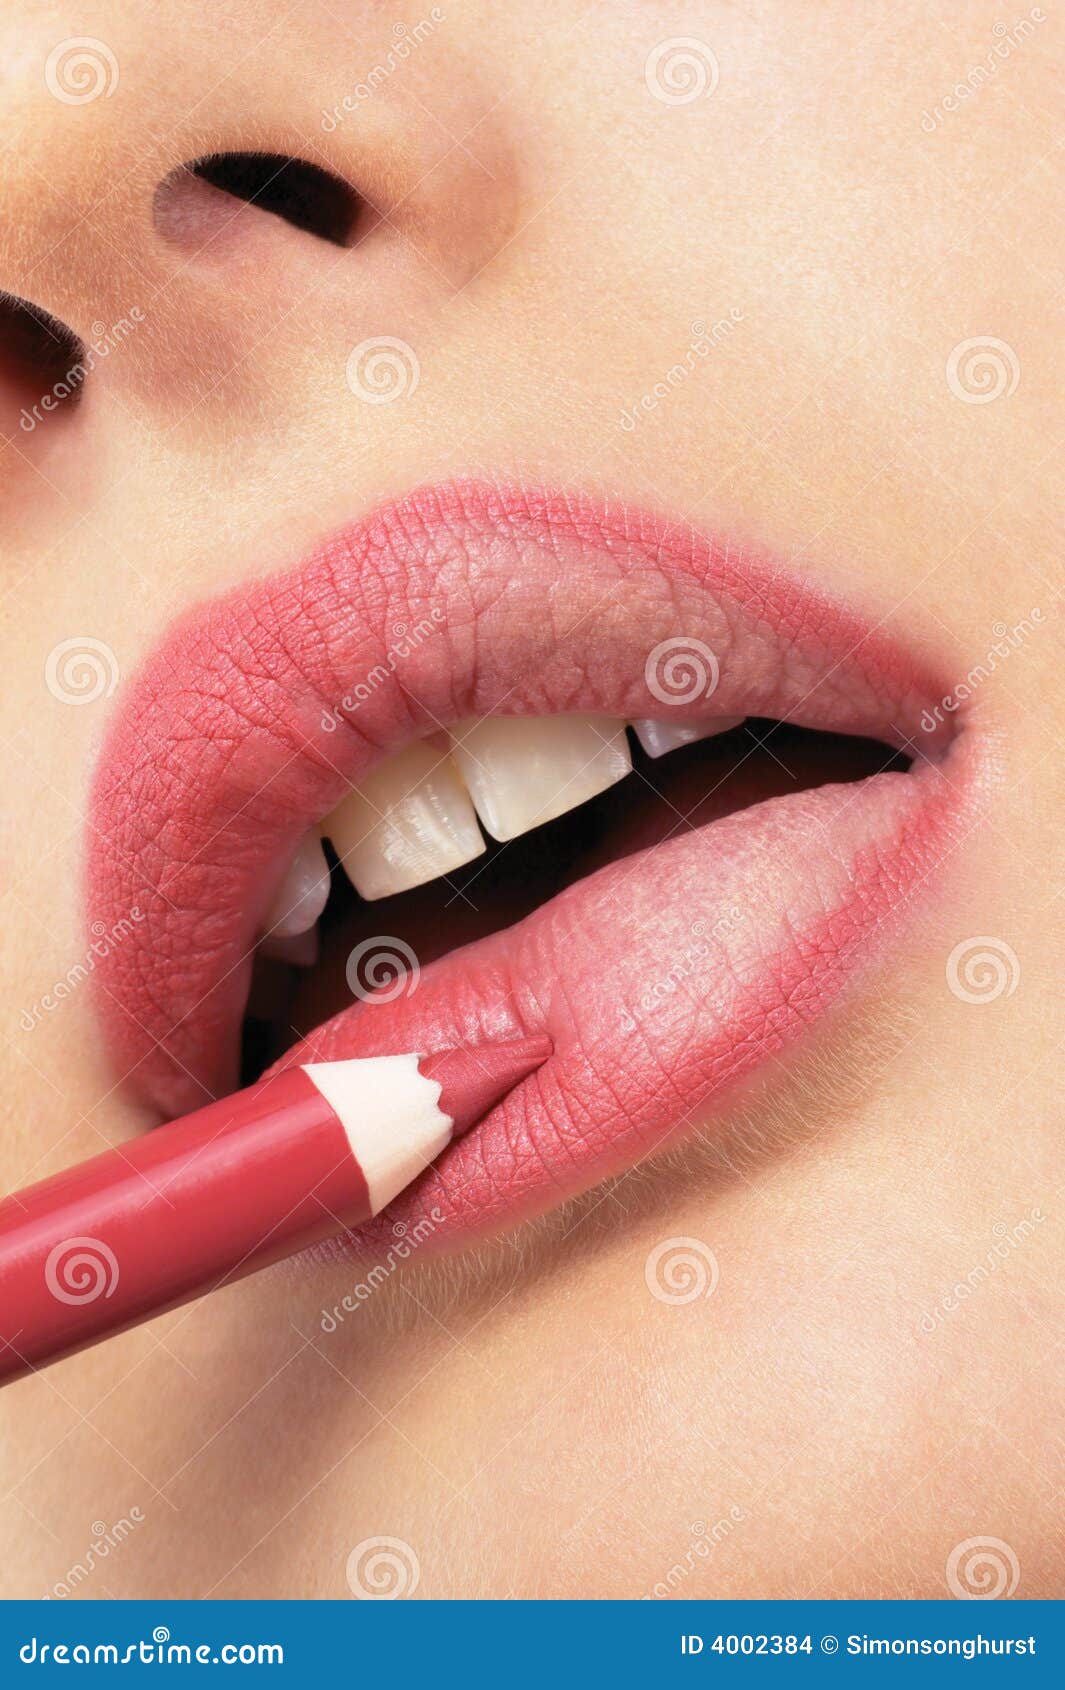 girl applying lip liner